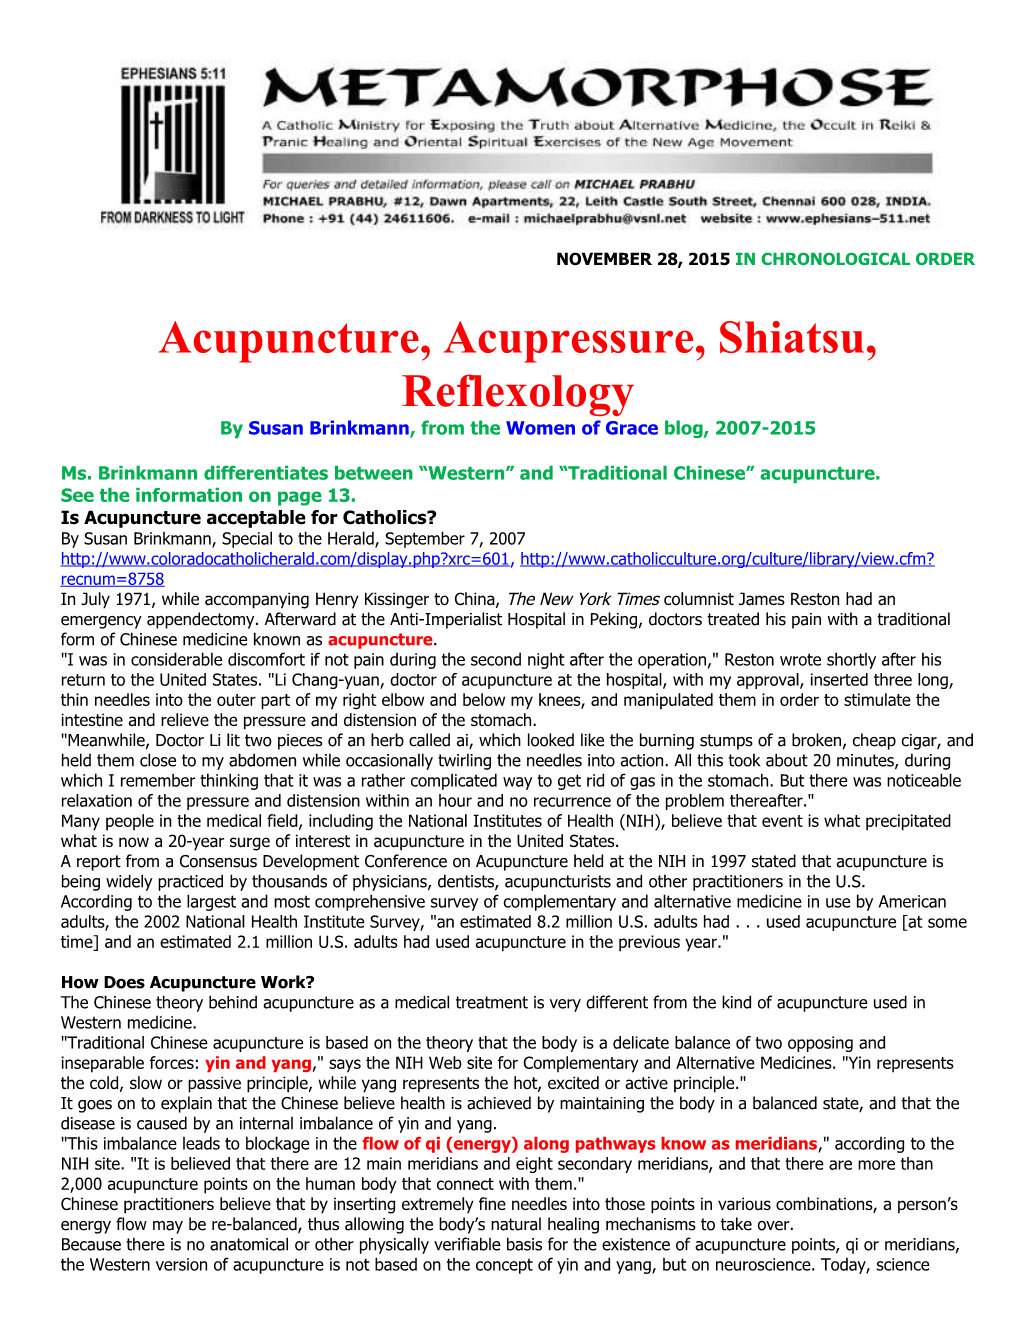 Acupuncture, Acupressure, Shiatsu, Reflexology